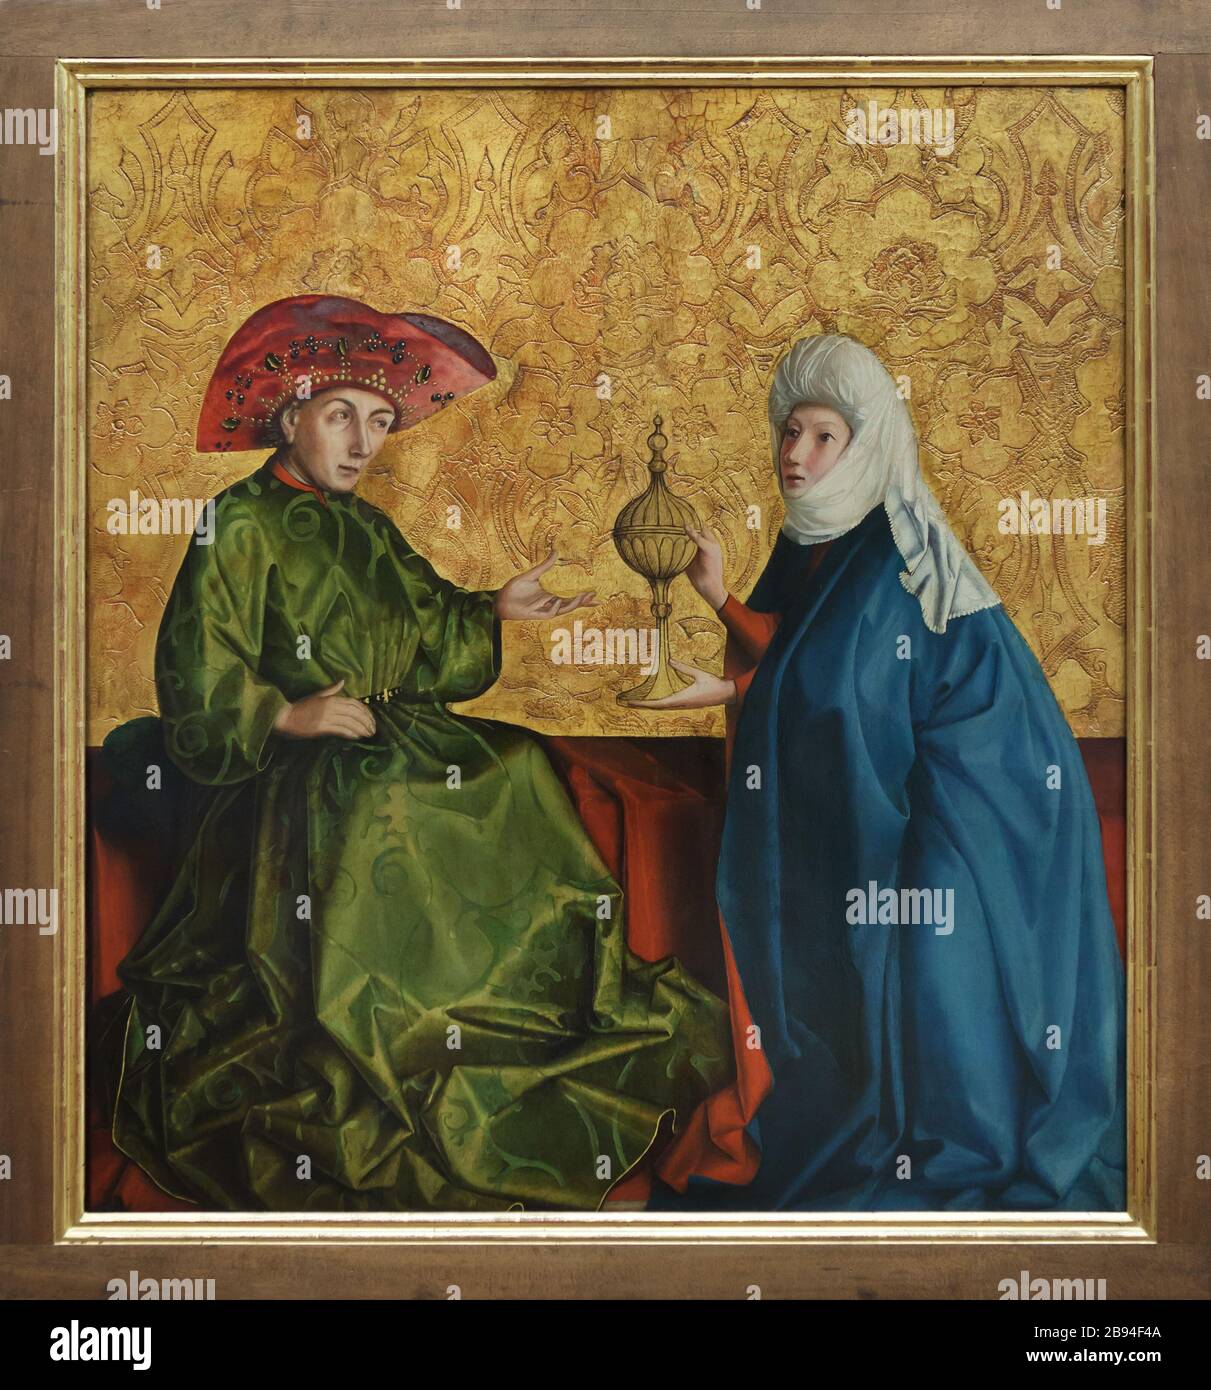 Peinture du roi Salomon et de la reine de Sheba par le peintre allemand de la Renaissance Konrad Witz (1435-1437) exposée dans la Berliner Gemäldegalerie (Berlin Picture Gallery) à Berlin, Allemagne. Banque D'Images